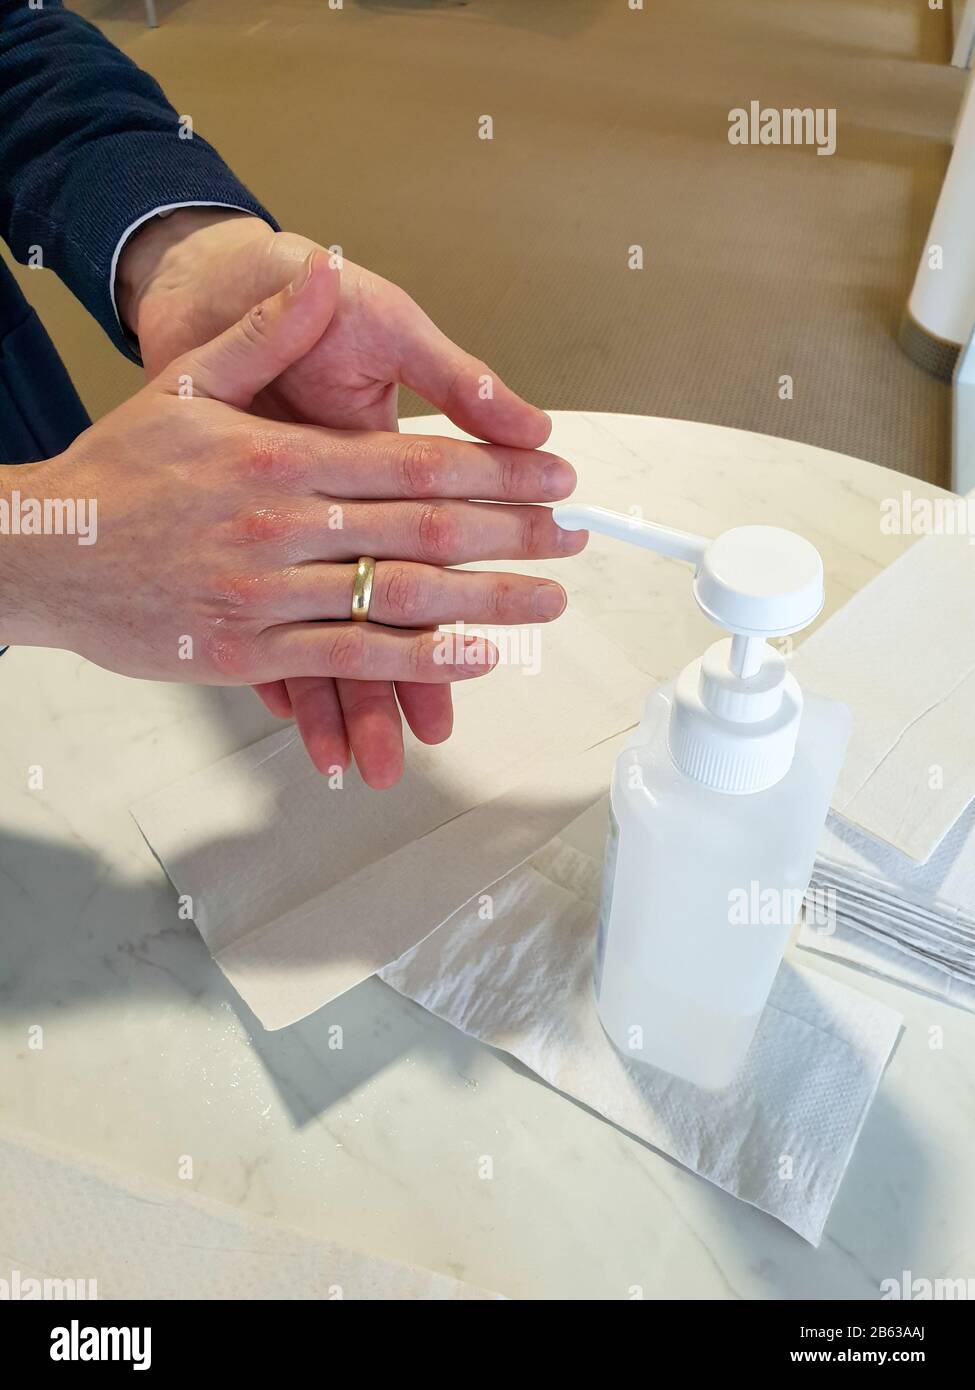 L'homme marié avec l'anneau doré sur le doigt se lave les mains avec du désinfectant pour éviter d'être infecté par le virus corona. Banque D'Images